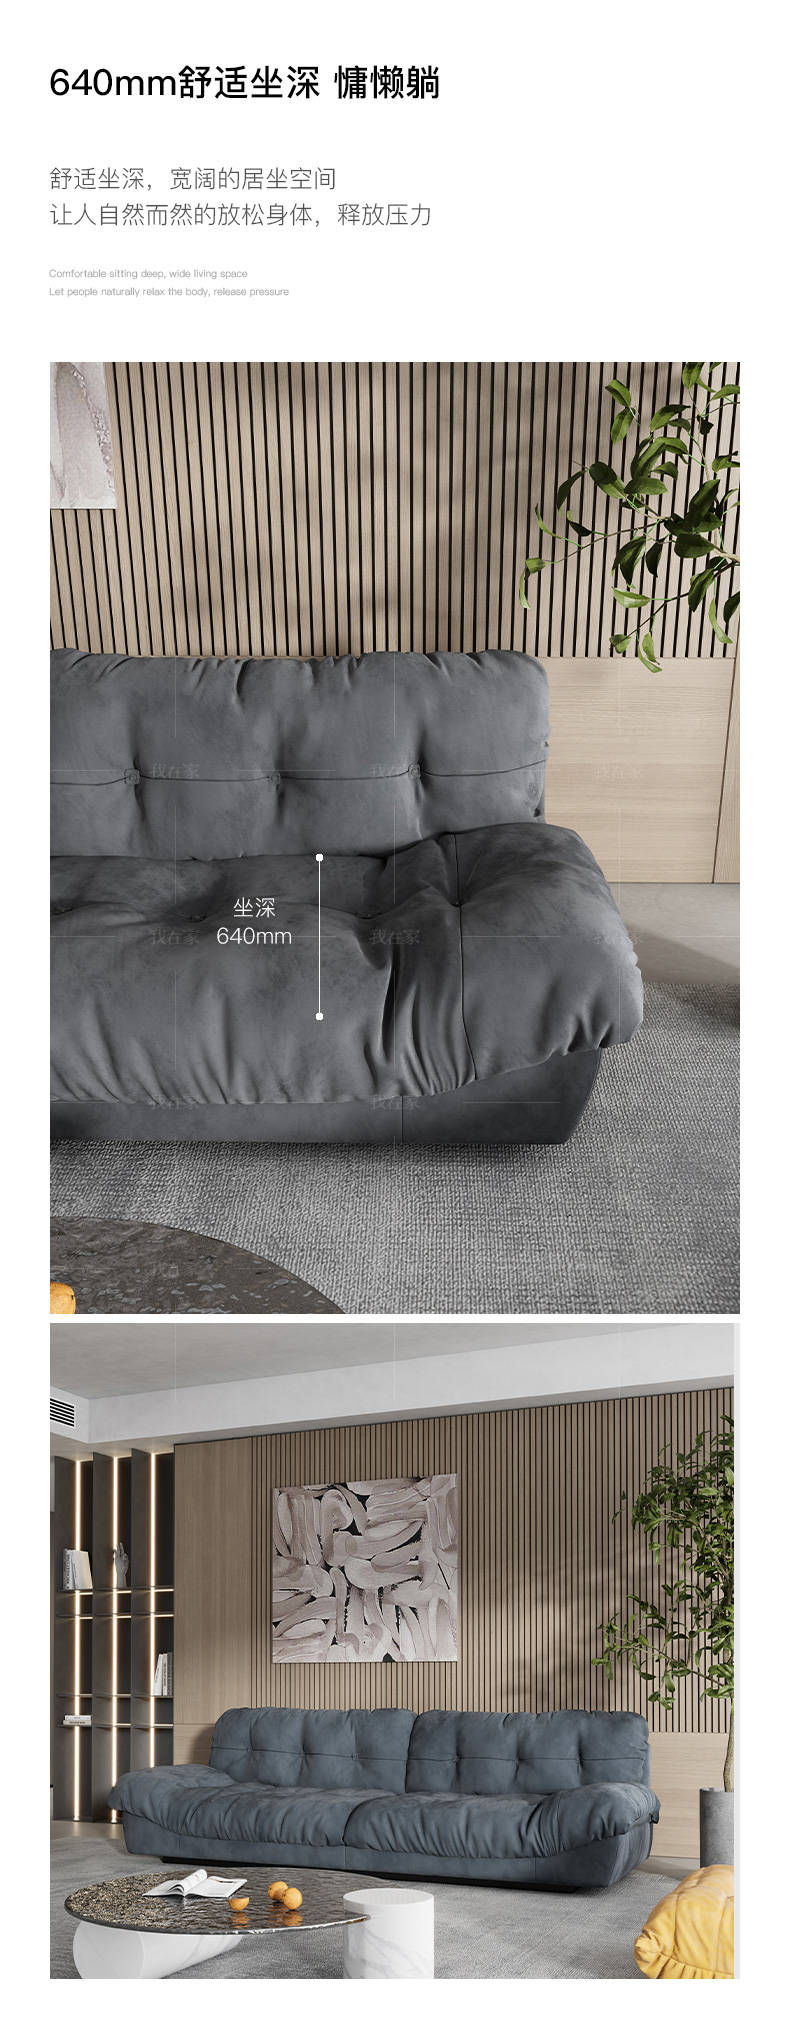 意式极简风格Milano布艺沙发的家具详细介绍